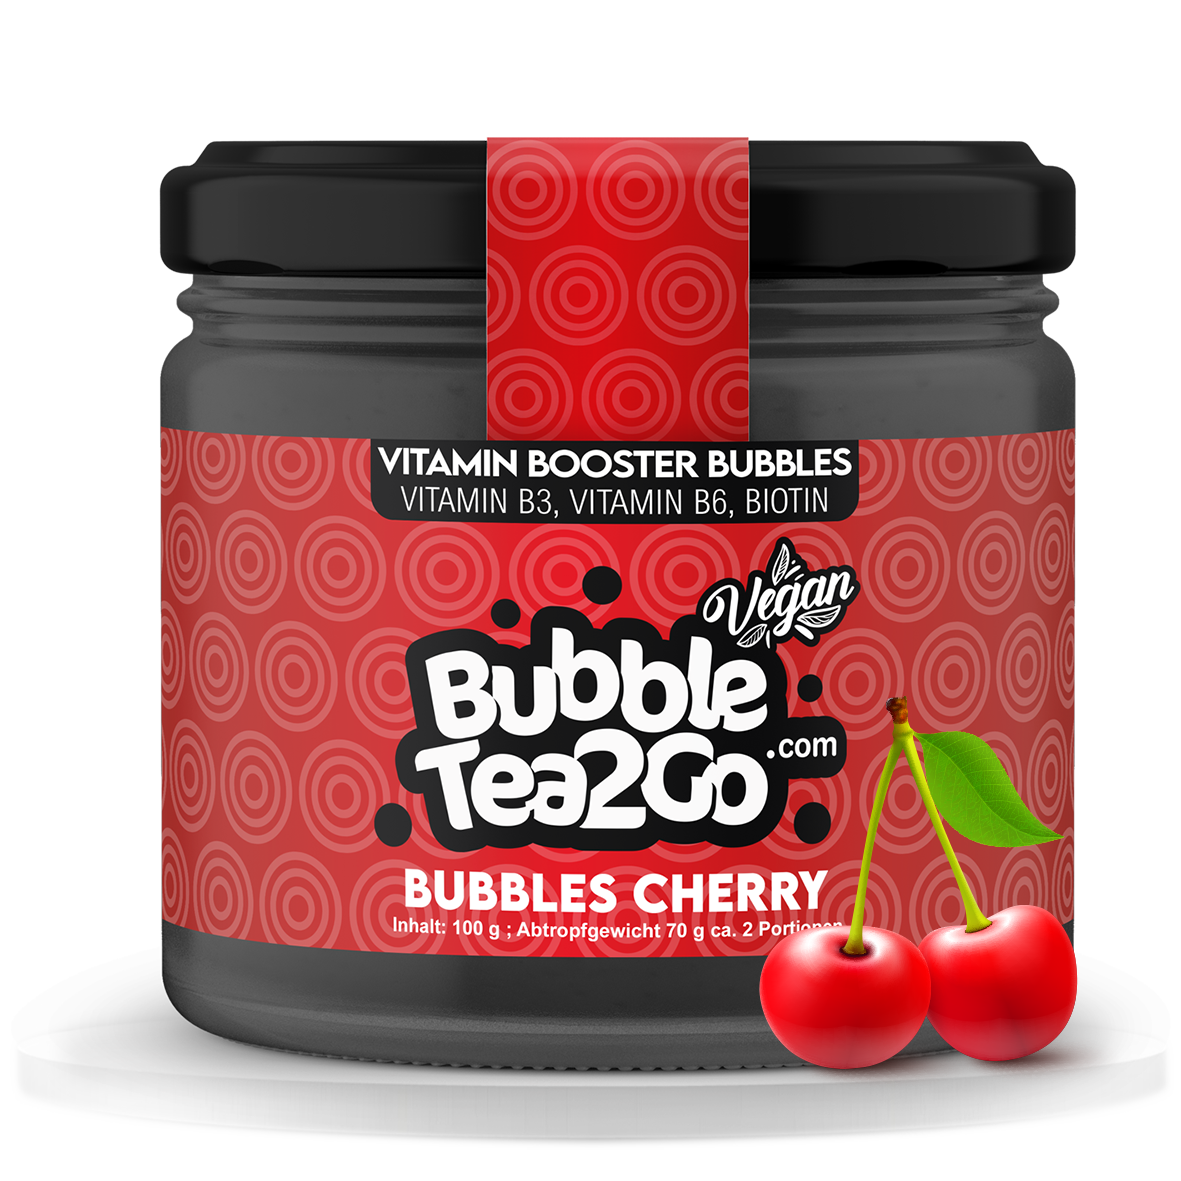 Bubbles - Cherry 2 servings (120g)